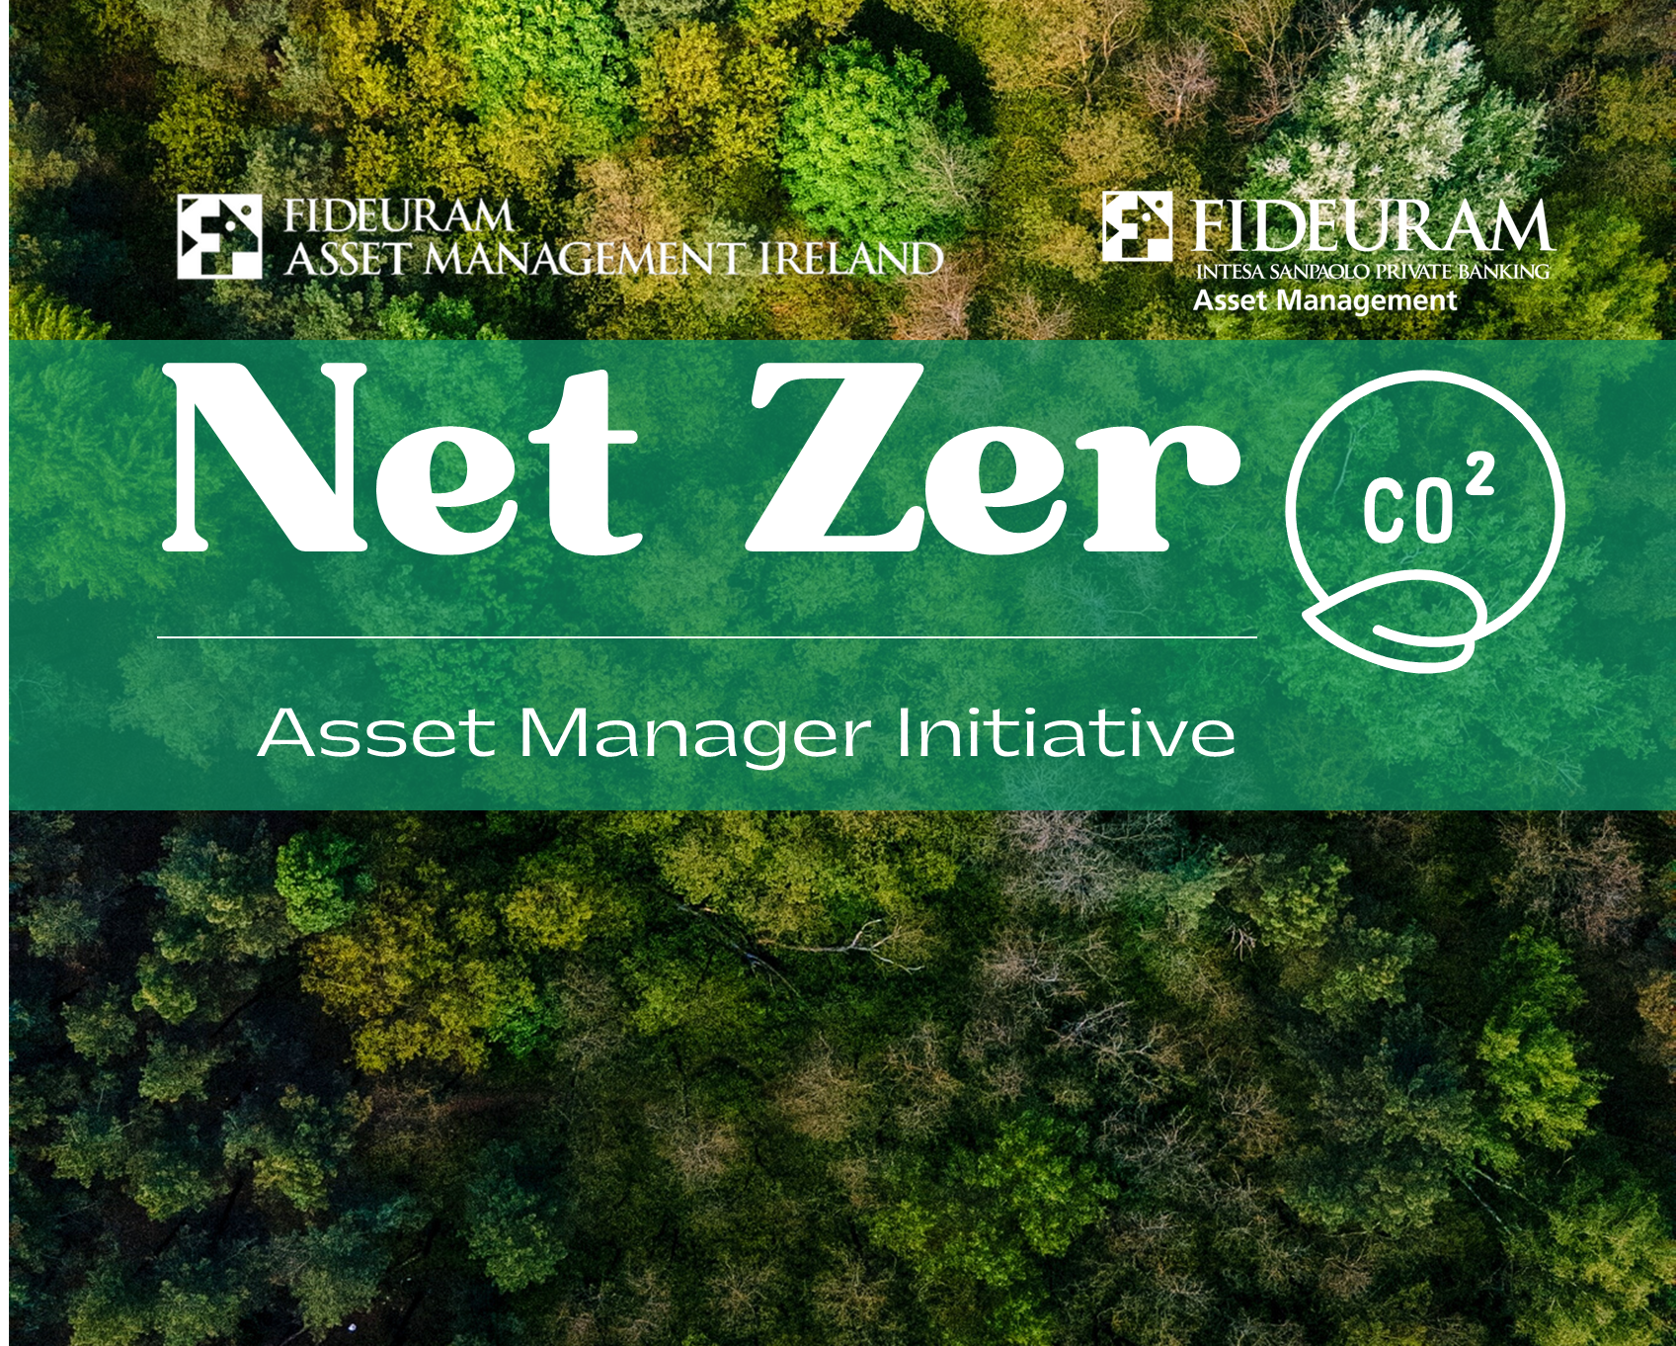 Foresta vista dall'alto con i loghi di Fideuram Asset Management in overlay  e la scritta "Net Zero Asset Manager Iniziative"